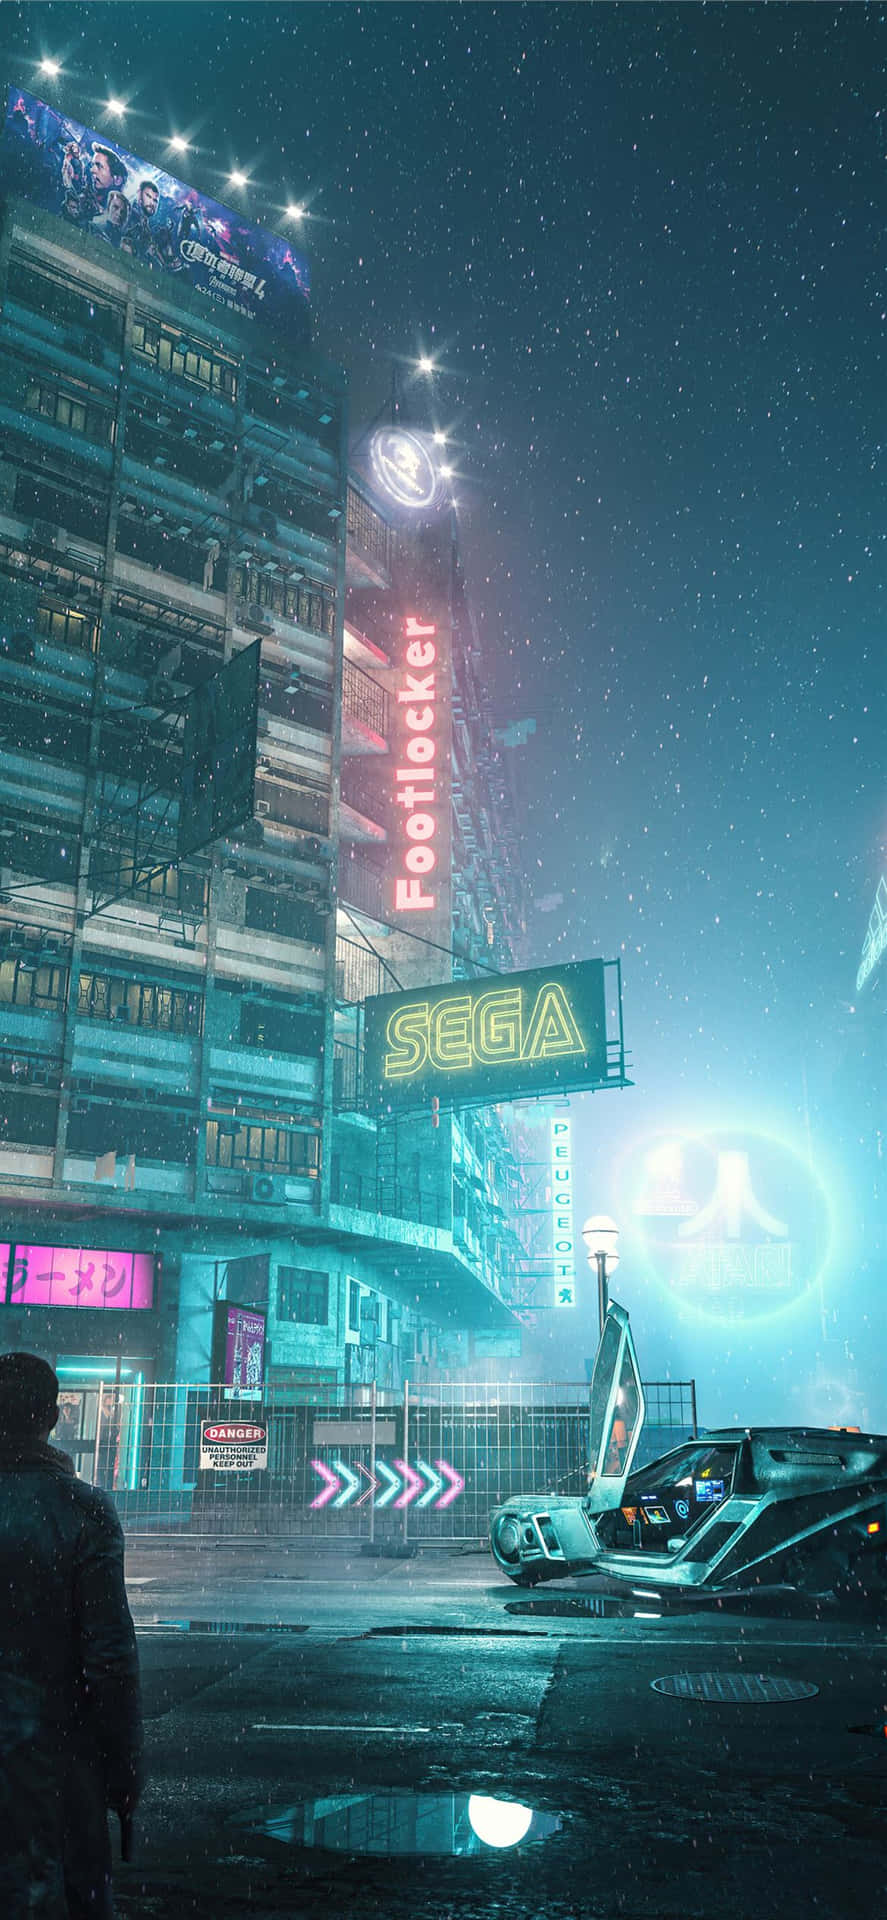 Cyberpunkstad - En Stad Med En Futuristisk Känsla. Wallpaper